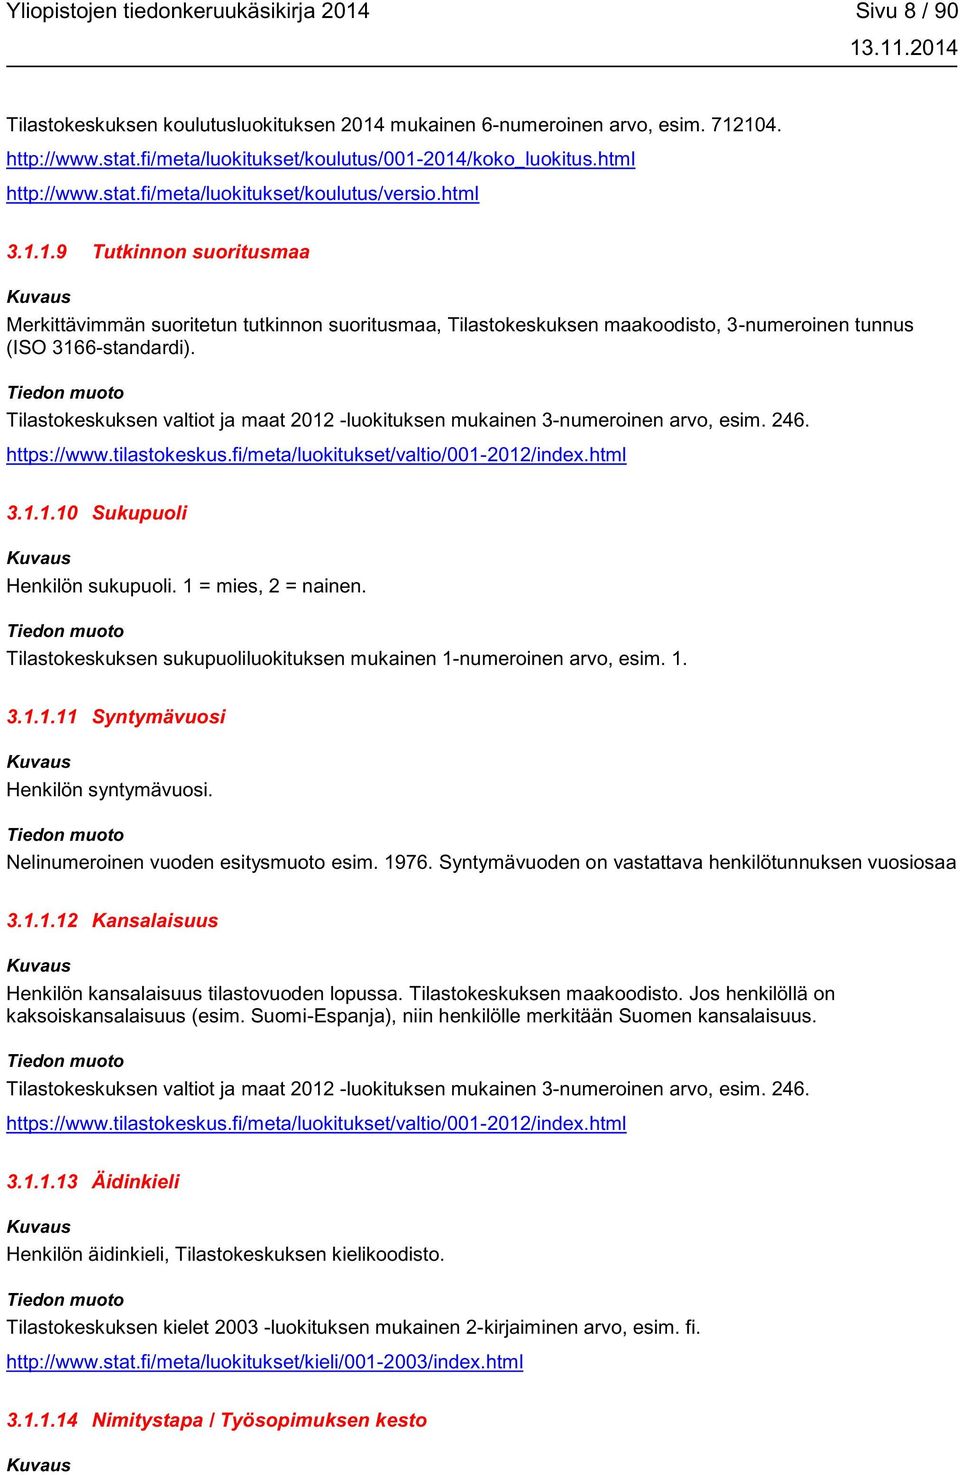 Tilastokeskuksen valtiot ja maat 2012 -luokituksen mukainen 3-numeroinen arvo, esim. 246. https://www.tilastokeskus.fi/meta/luokitukset/valtio/001-2012/index.html 3.1.1.10 Sukupuoli Henkilön sukupuoli.